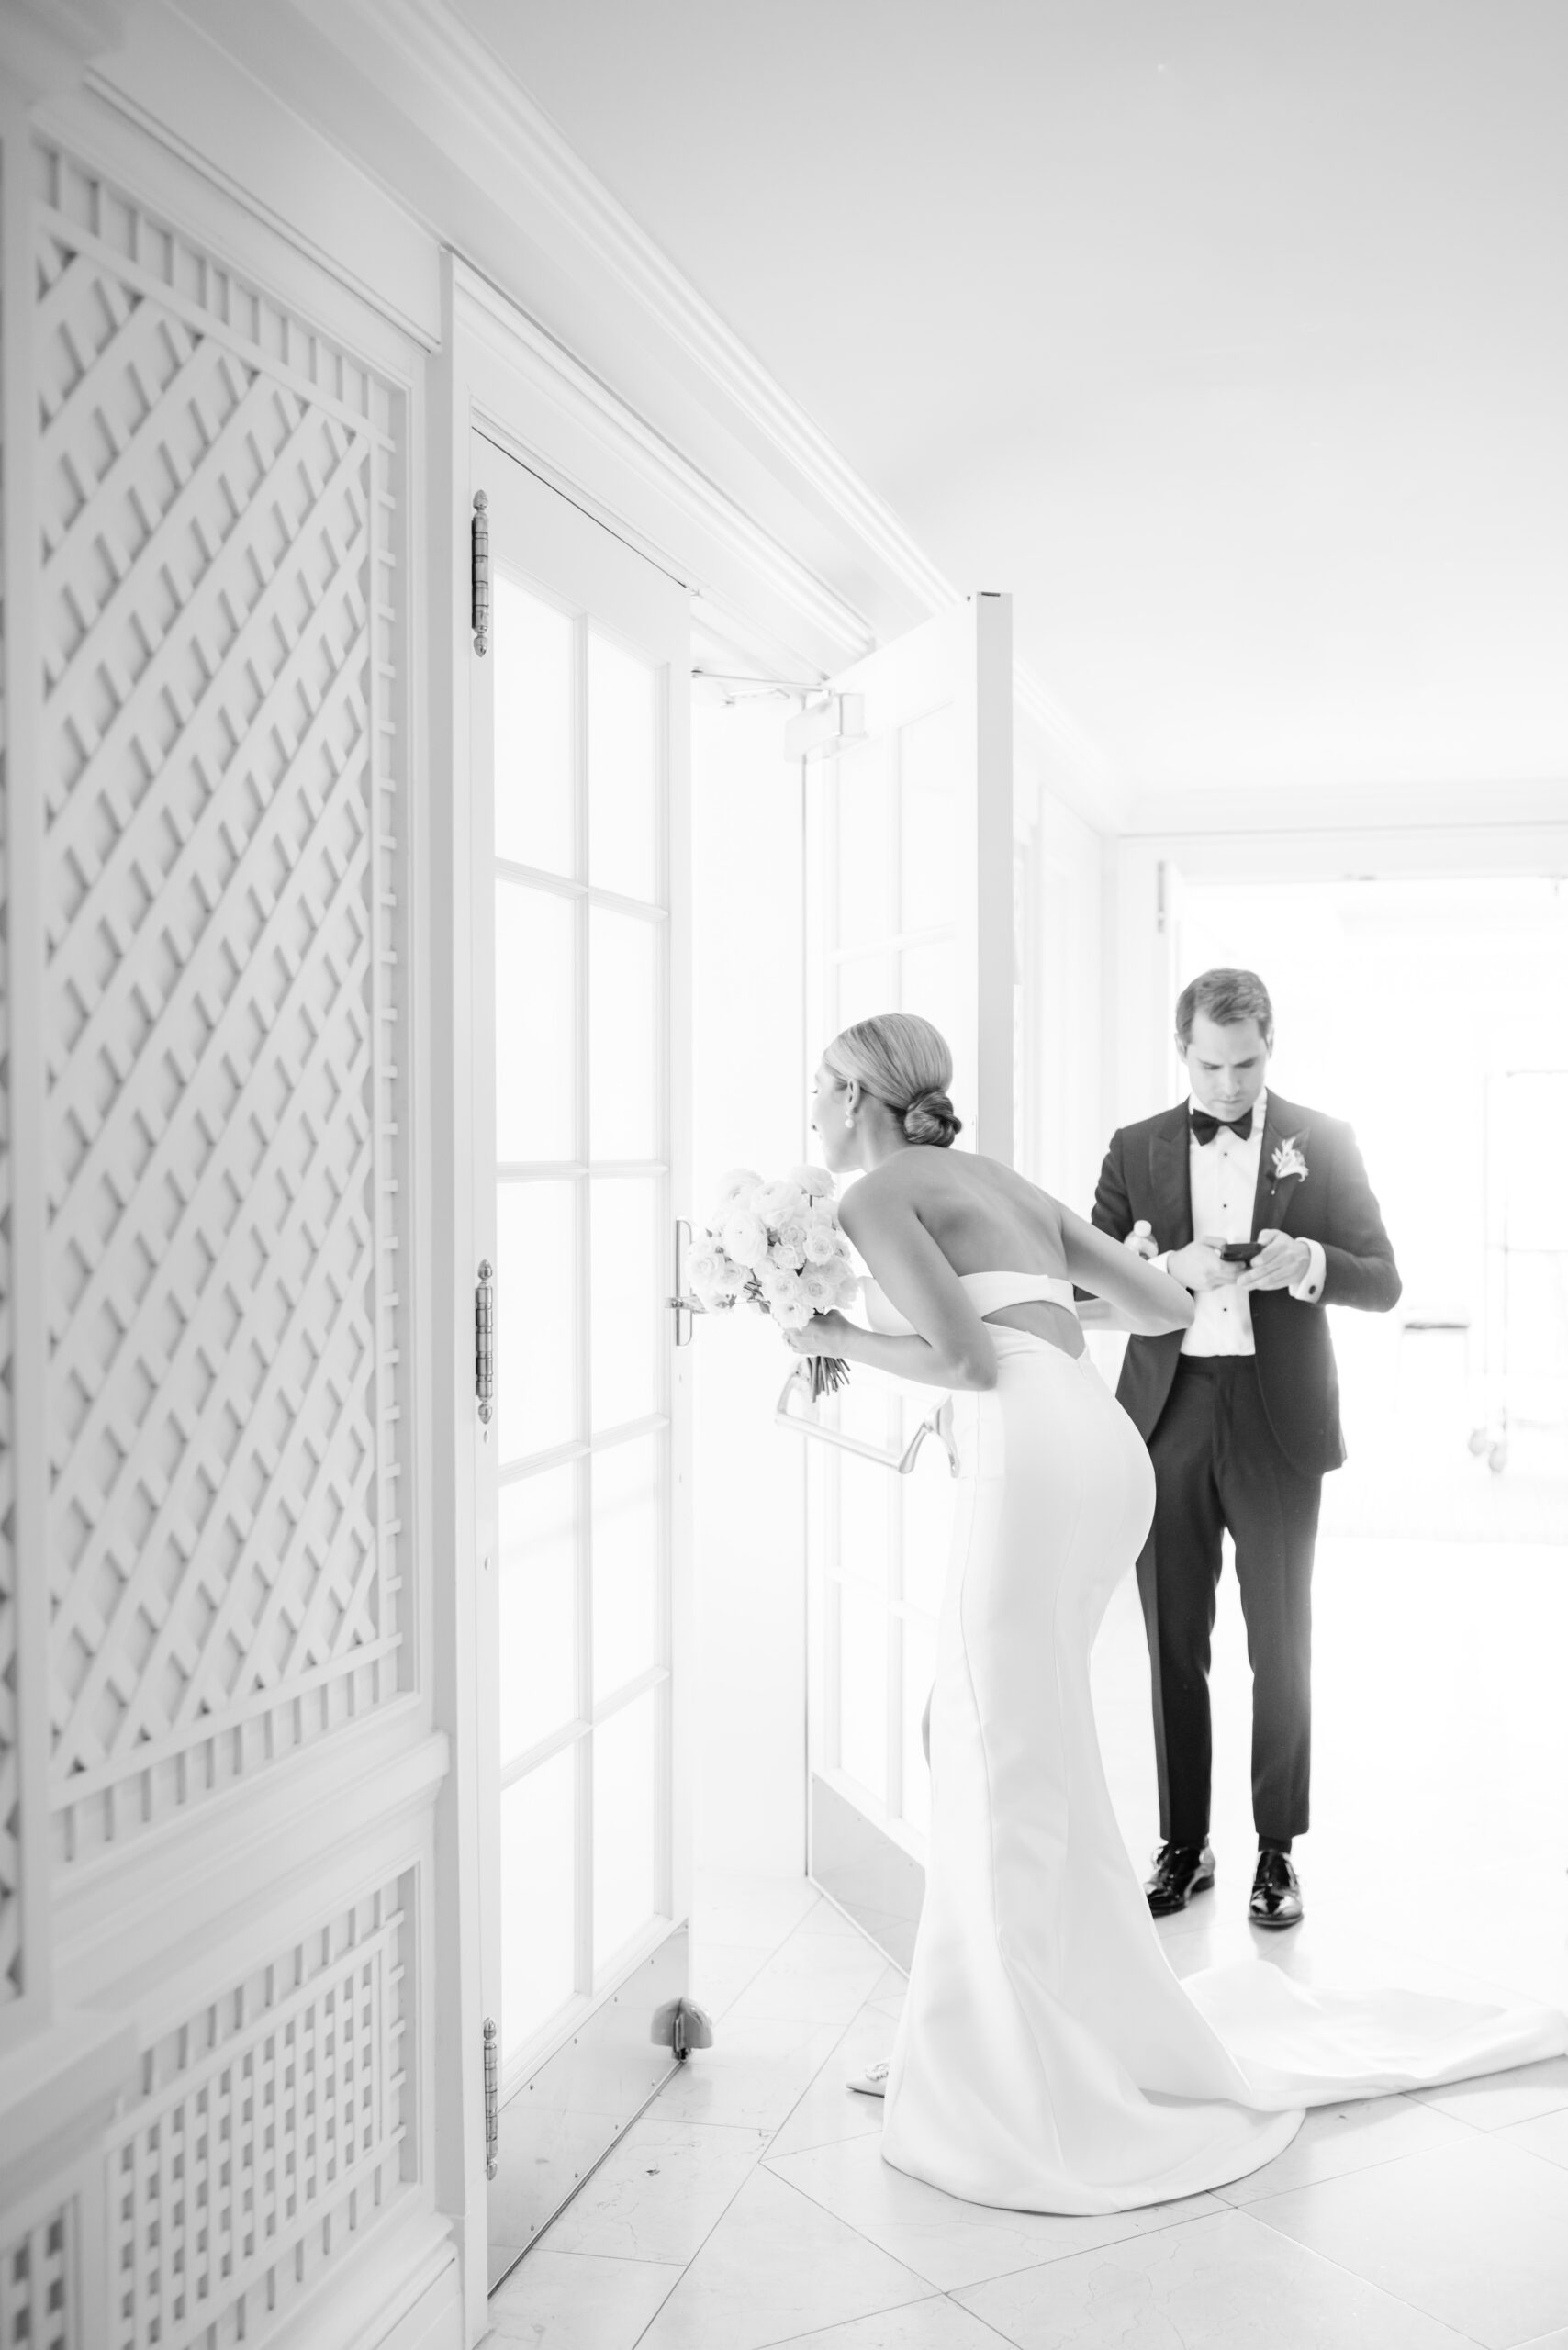 A chic black tie wedding at the elegant Hay Adams hotel in Washington, DC. 